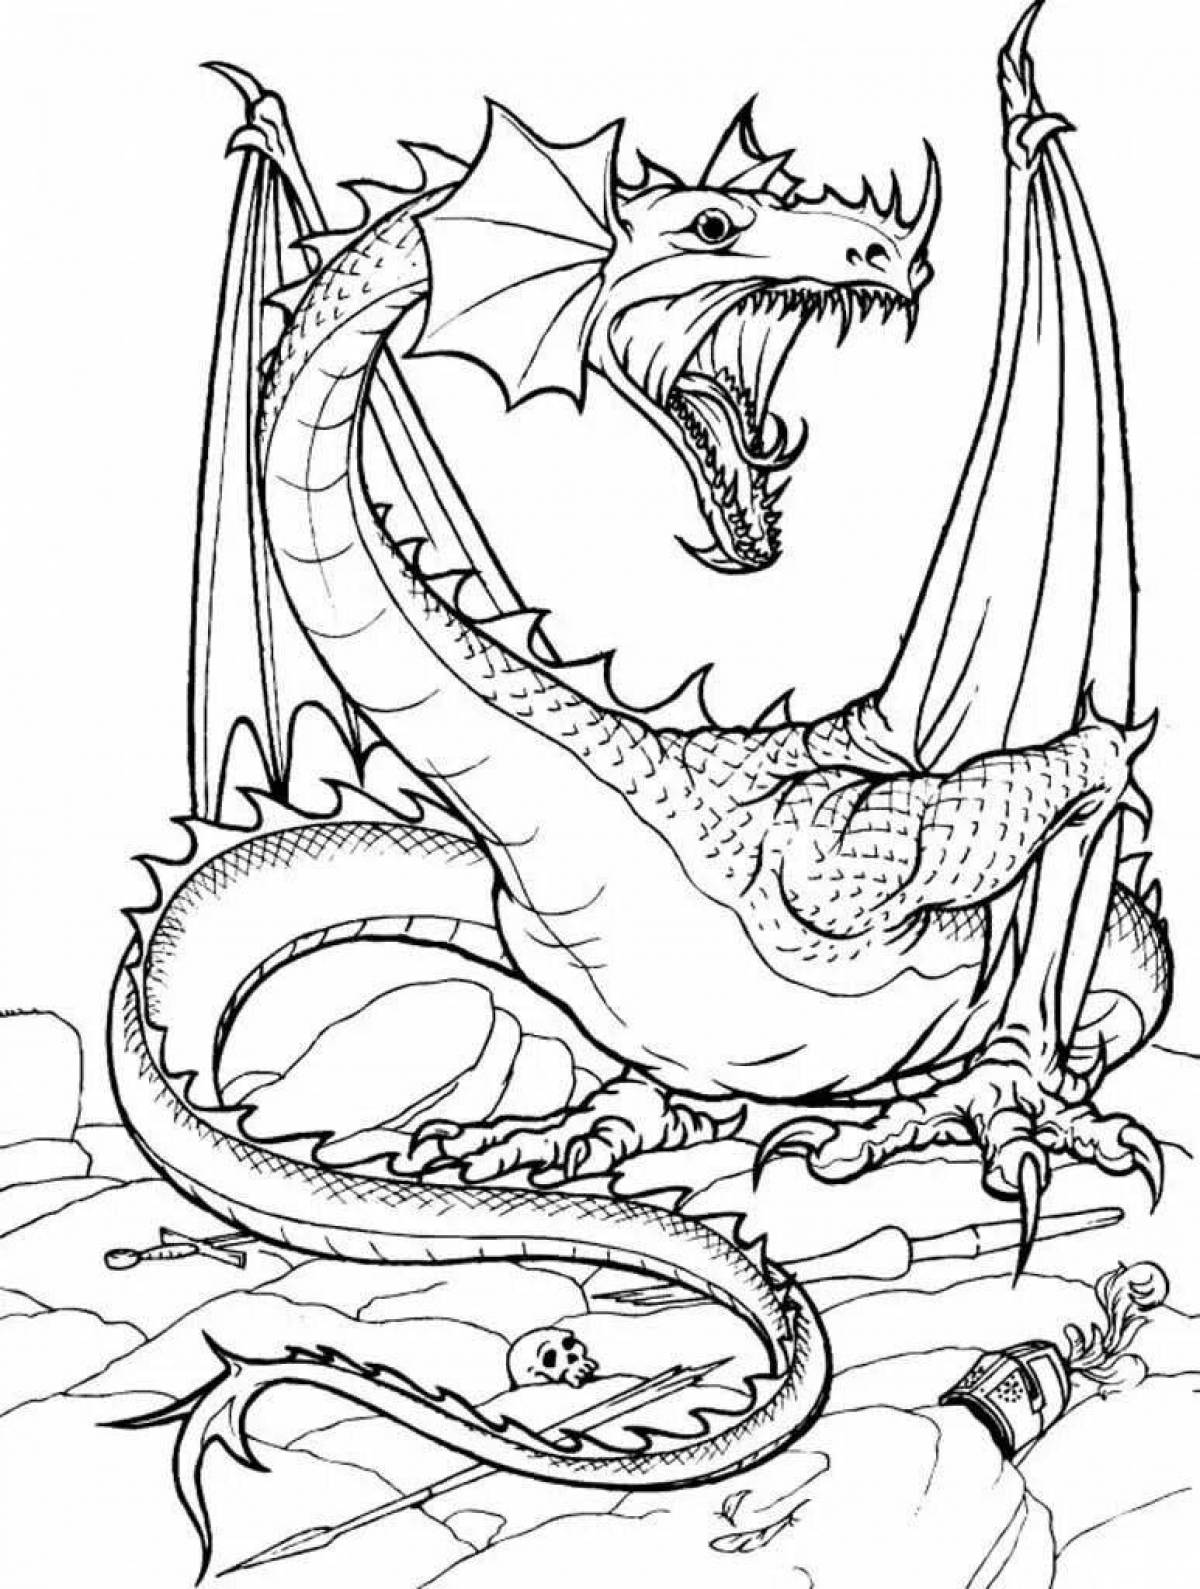 Фантастическая раскраска дракон для детей 7 лет